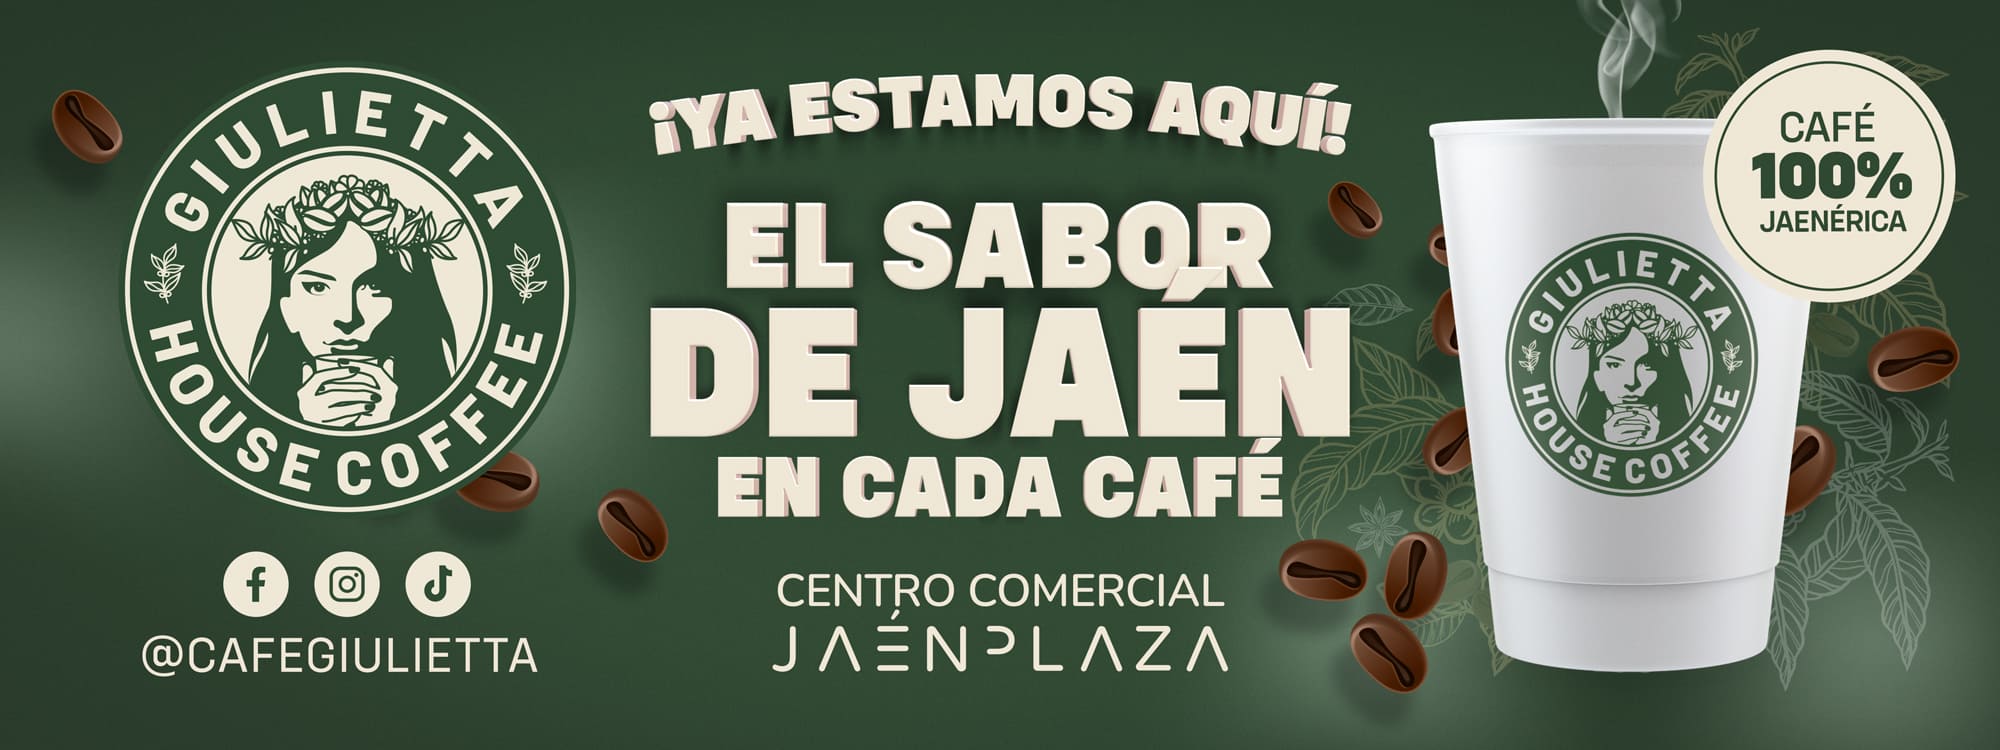 Café Giulietta Jaén